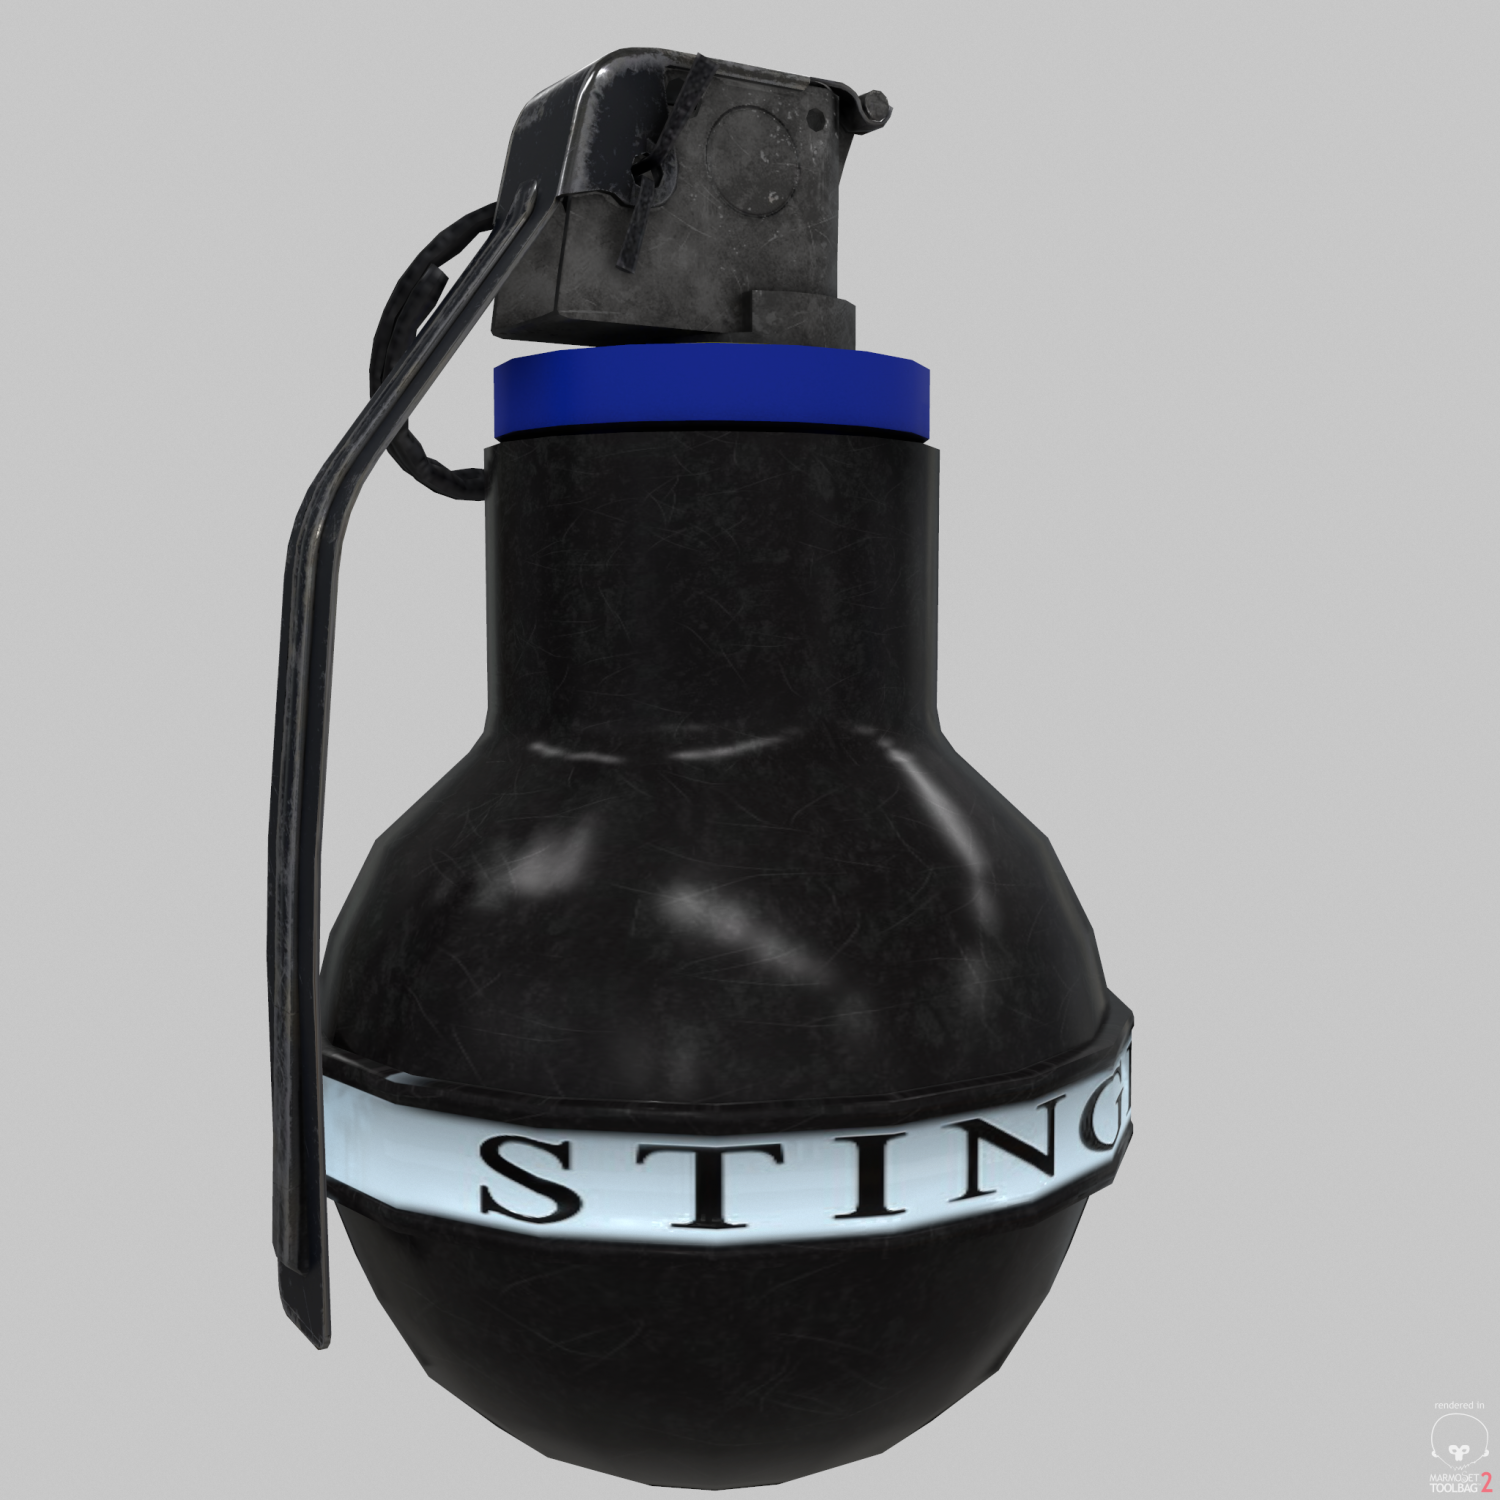 Grenade stinger 3D model